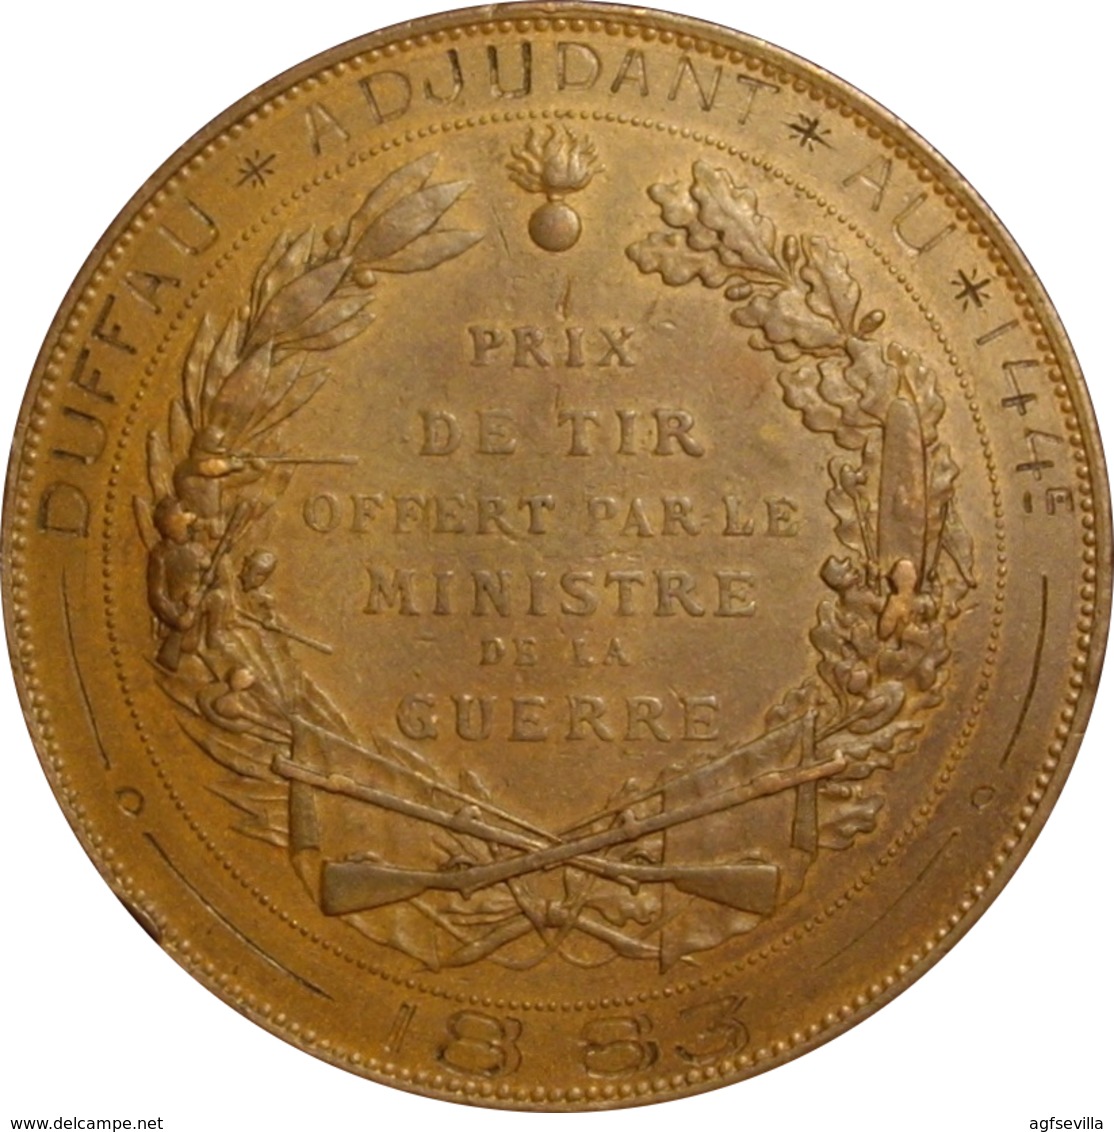 FRANCE. MÉDAILLE PRIX DE TIR OFFERT PAR LE MINISTRE DE LA GUERRE. 1.883 - Monarchia / Nobiltà